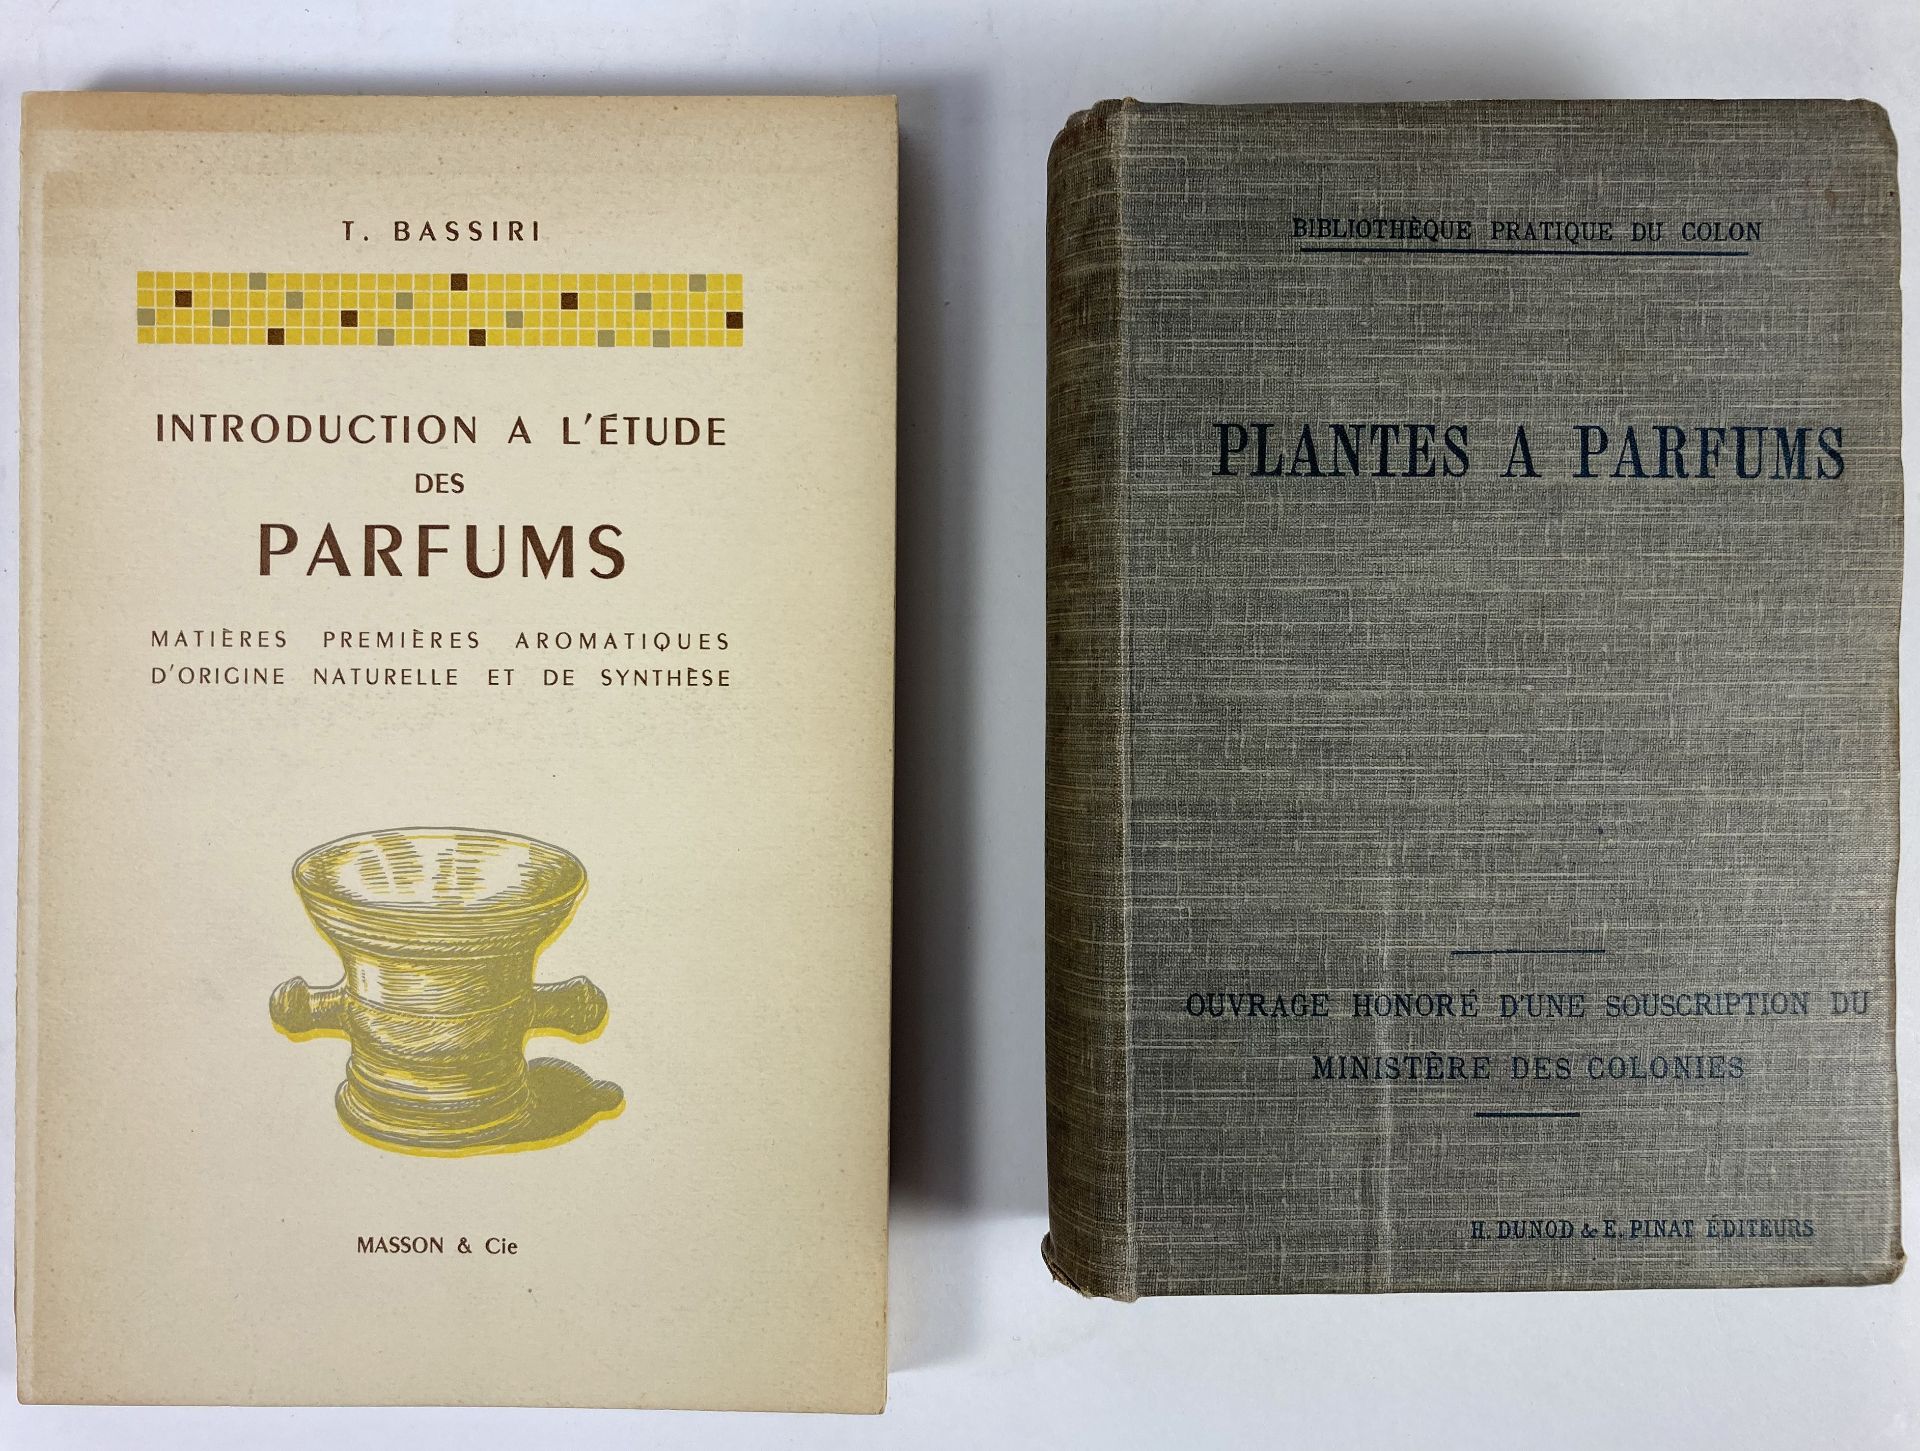 PERFUME -- BASSIRI, T. Introduction a l'étude des parfums. Paris, 1960. 278, (2